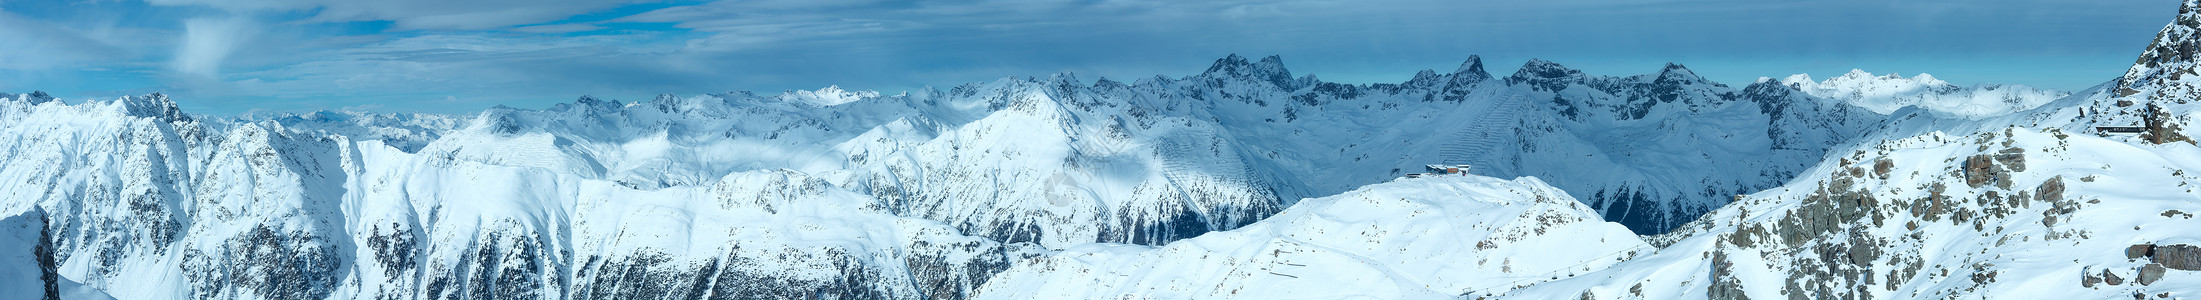 雪地度假村SilvrettaAlps风景奥地利蒂罗尔州IschglAGIschgl全景所有人都无法辨认天空高清图片素材